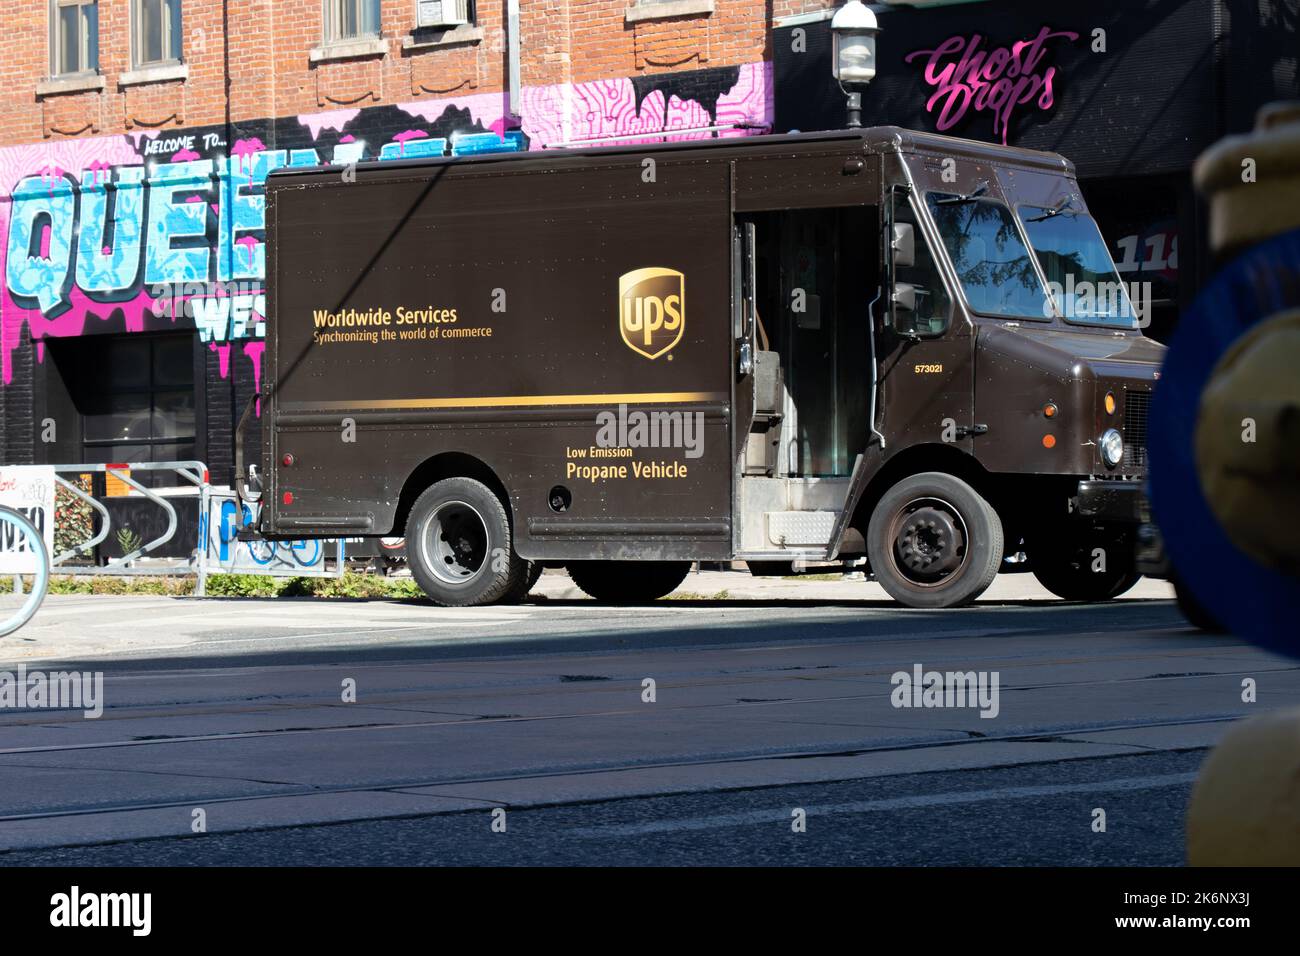 Ein brauner UPS Lieferwagen an einem sonnigen Tag in Toronto. United Parcel Service ist das weltweit größte Logistikunternehmen. Stockfoto